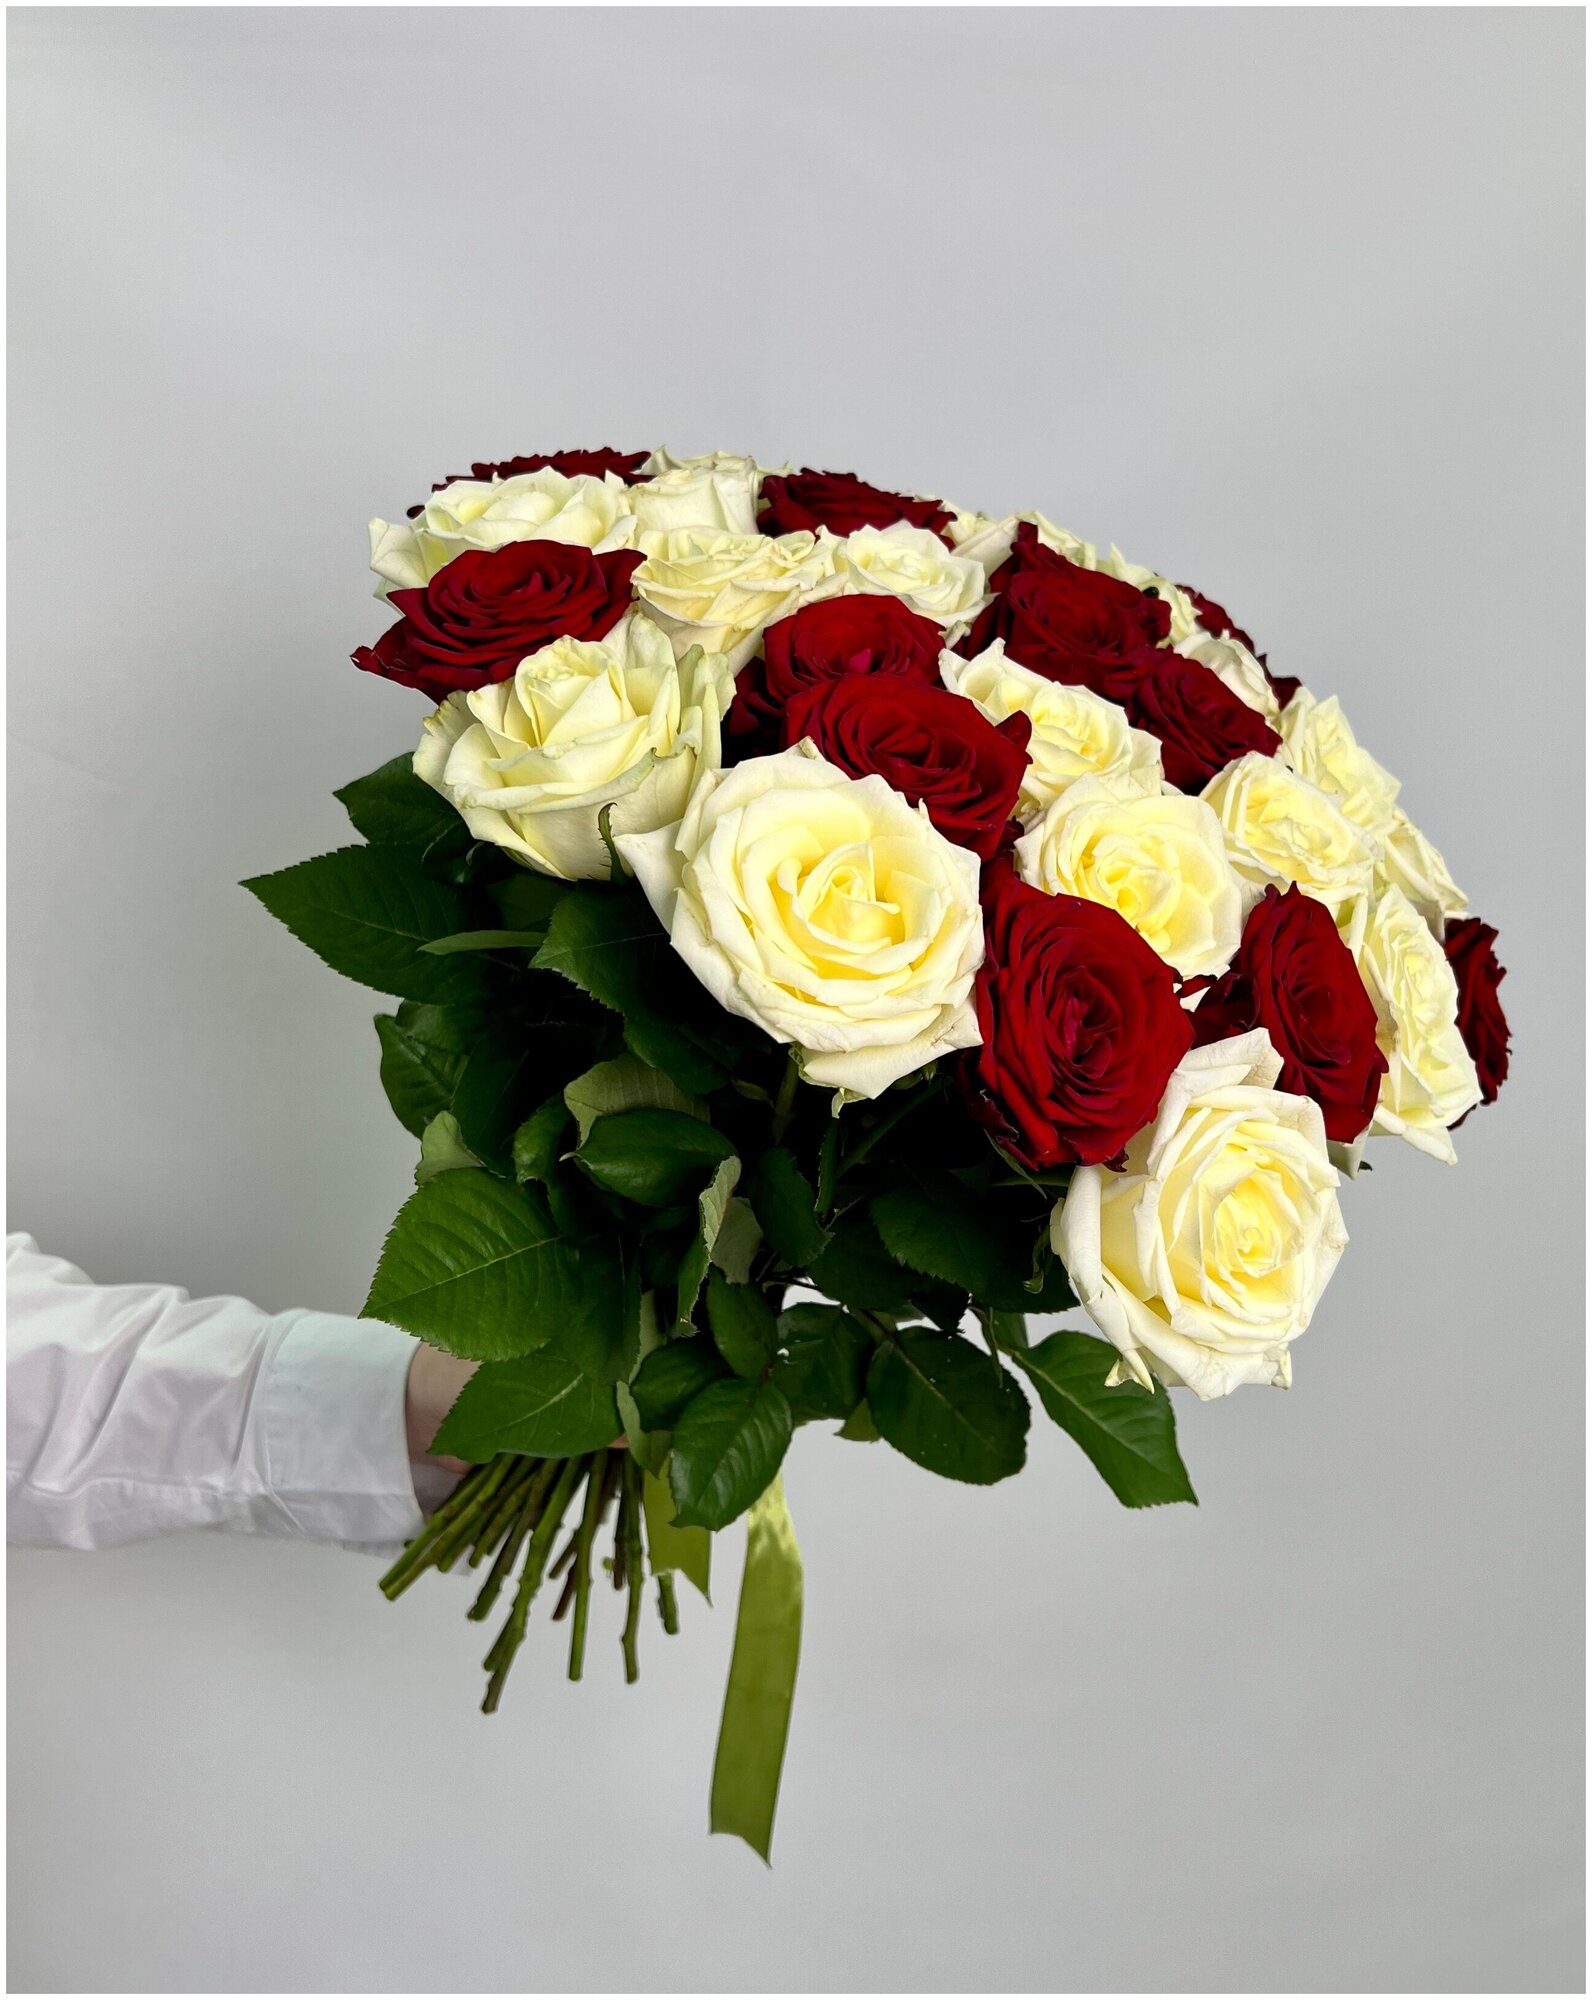 Микс бело-красный из роз Аваланж и Ред наоми 31 шт 50 см